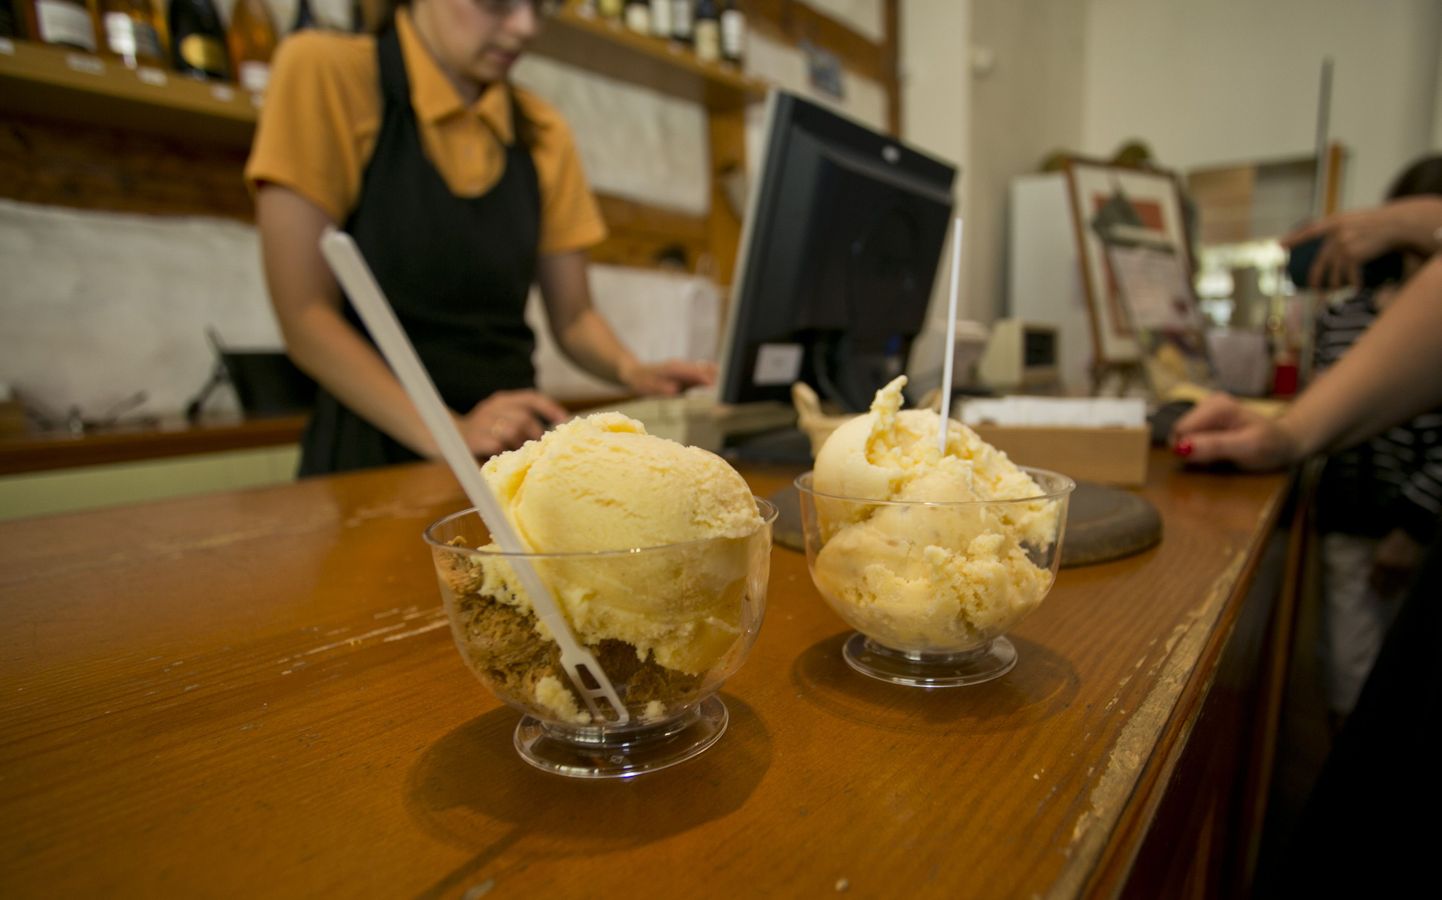 Suvine jäätisehitt: esiplaanil vanilje- ja rummi-ploomijäätis, tagaplaanil sidruni- ja pähklijäätis.